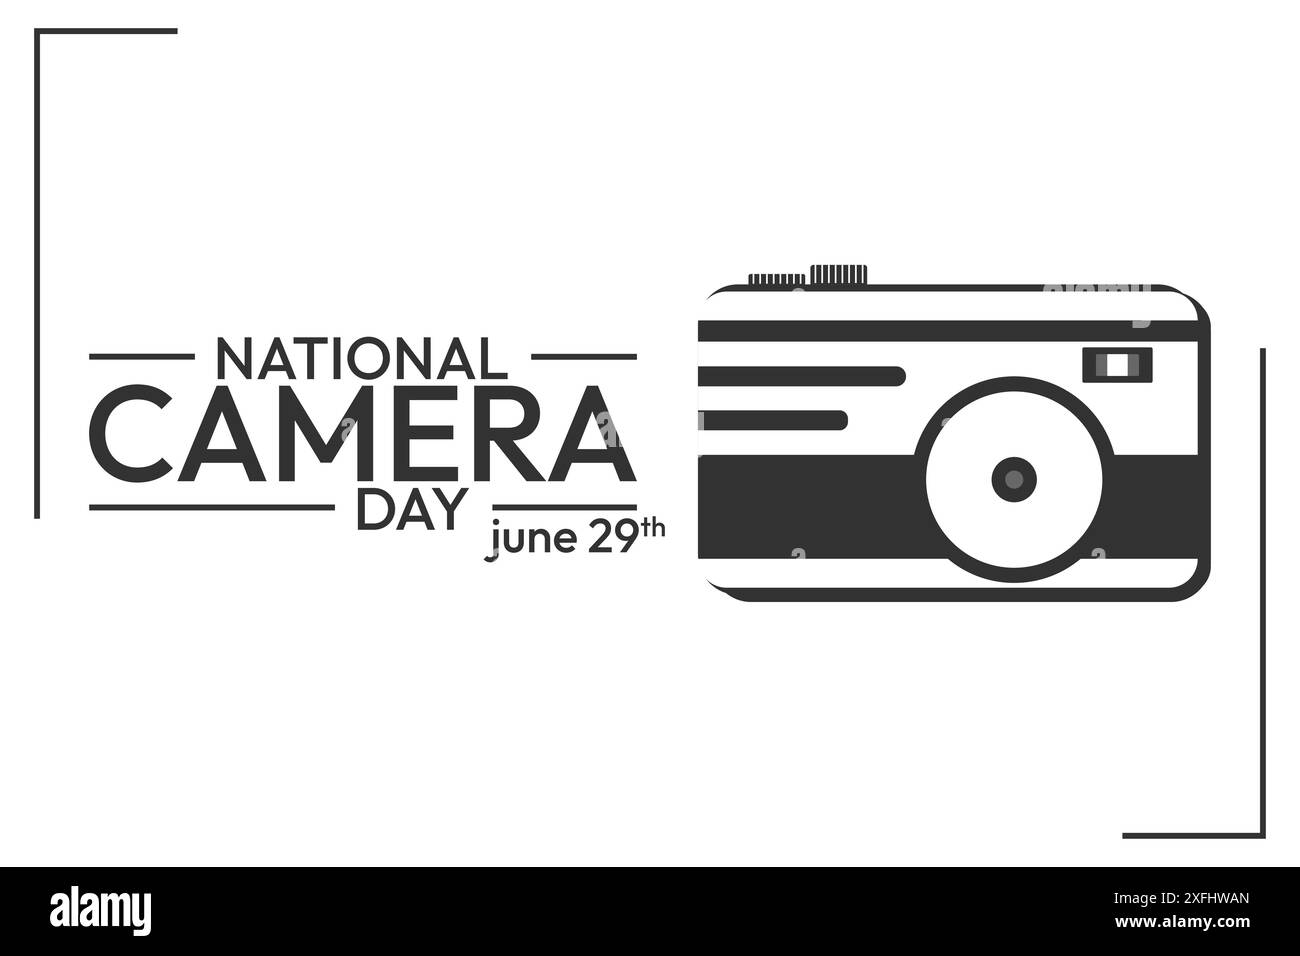 caméra, modèle de conception de la journée nationale de la caméra juin 29. Illustration de Vecteur